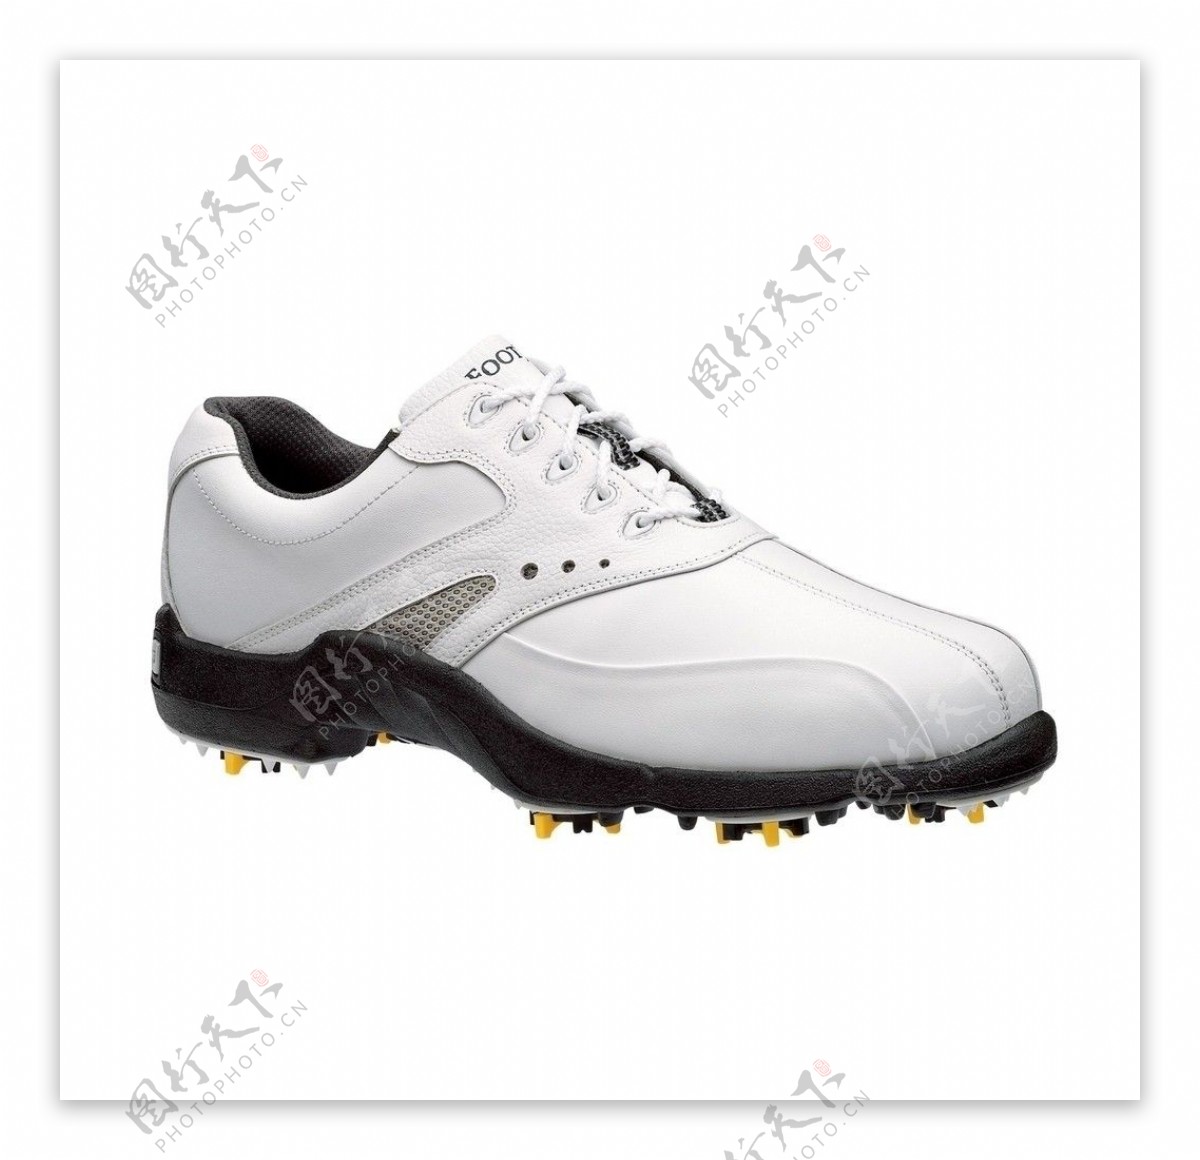 男式高尔夫球鞋图片